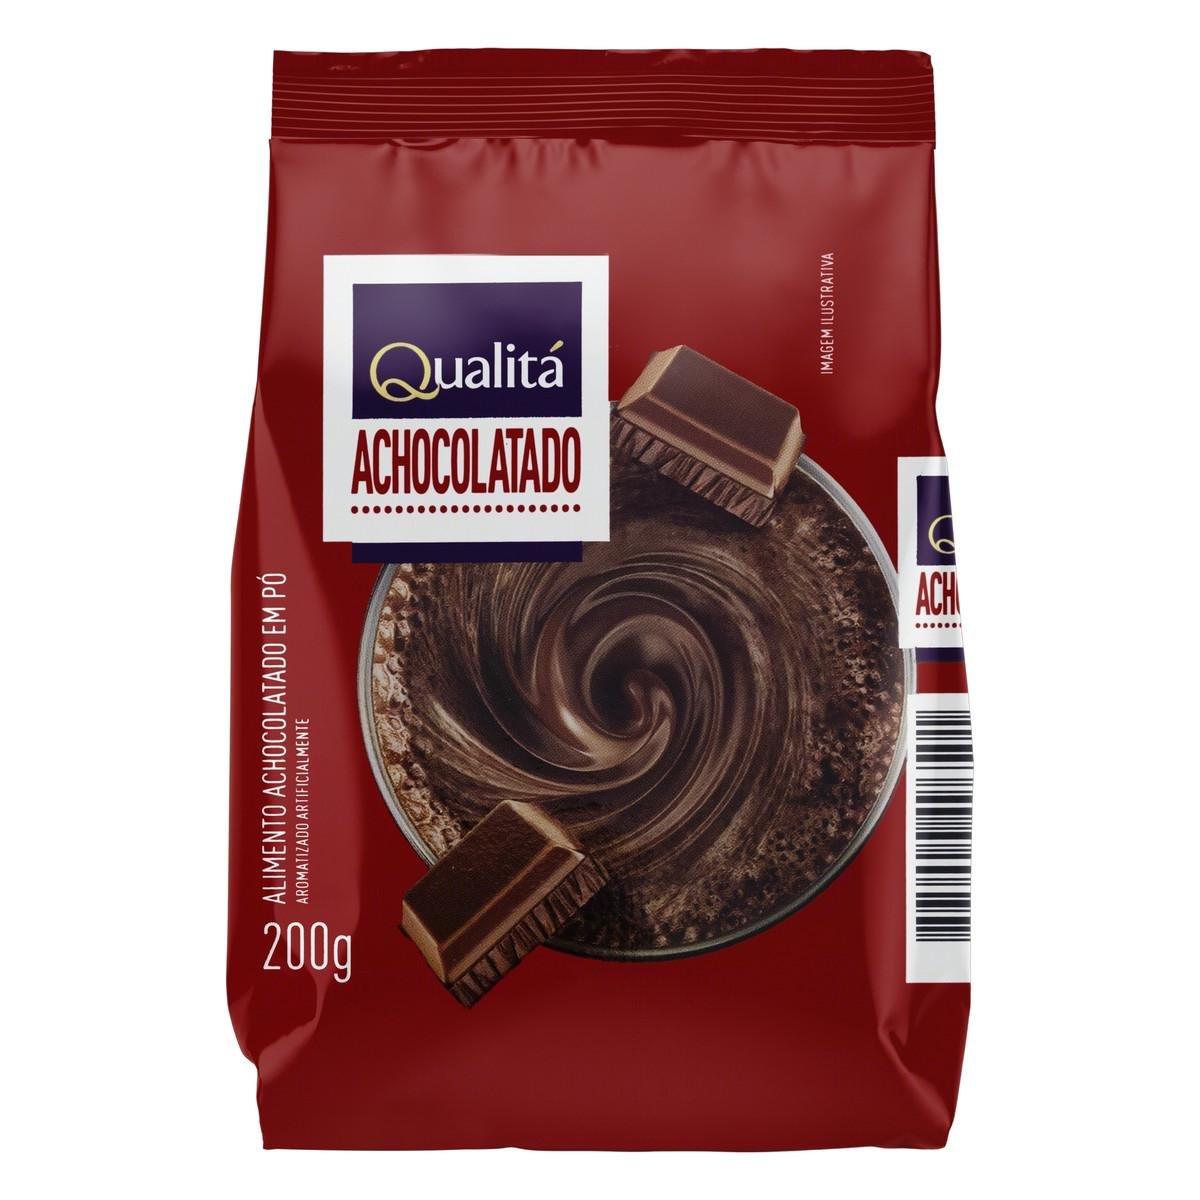 Toddynho Chocolate Enriquecido Com Vitaminas 3-pack 200 ml each